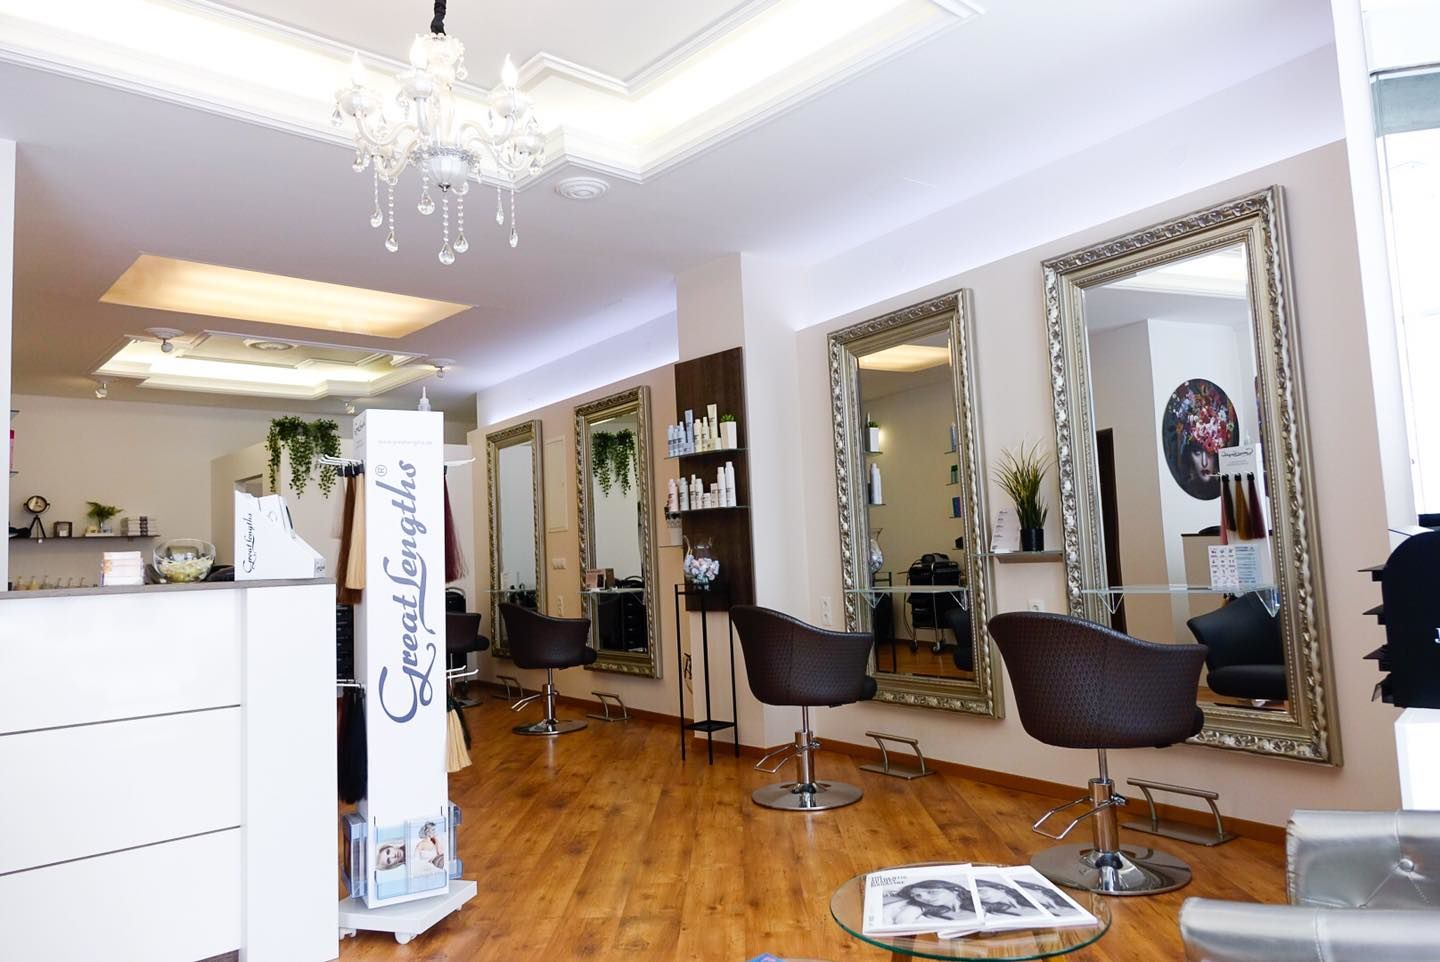 Blick in den hellen Raum von Emiras Salon mit dem Empfangstresen links und rechts Schneideplätzen mit Spiegeln